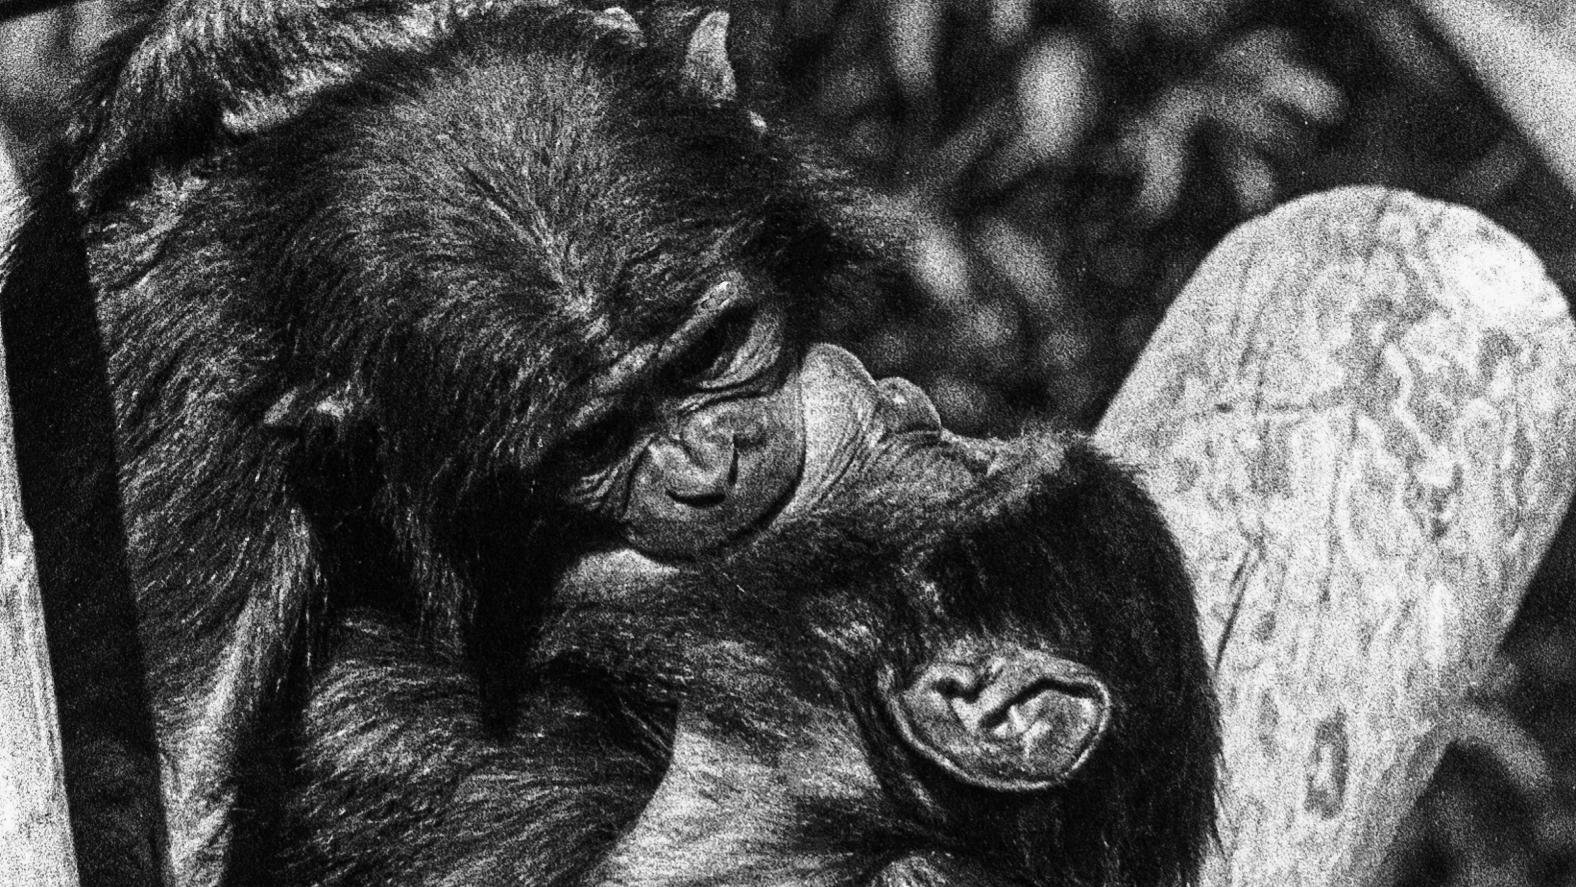 Dos monos besándose "de lengua" en un árbol.